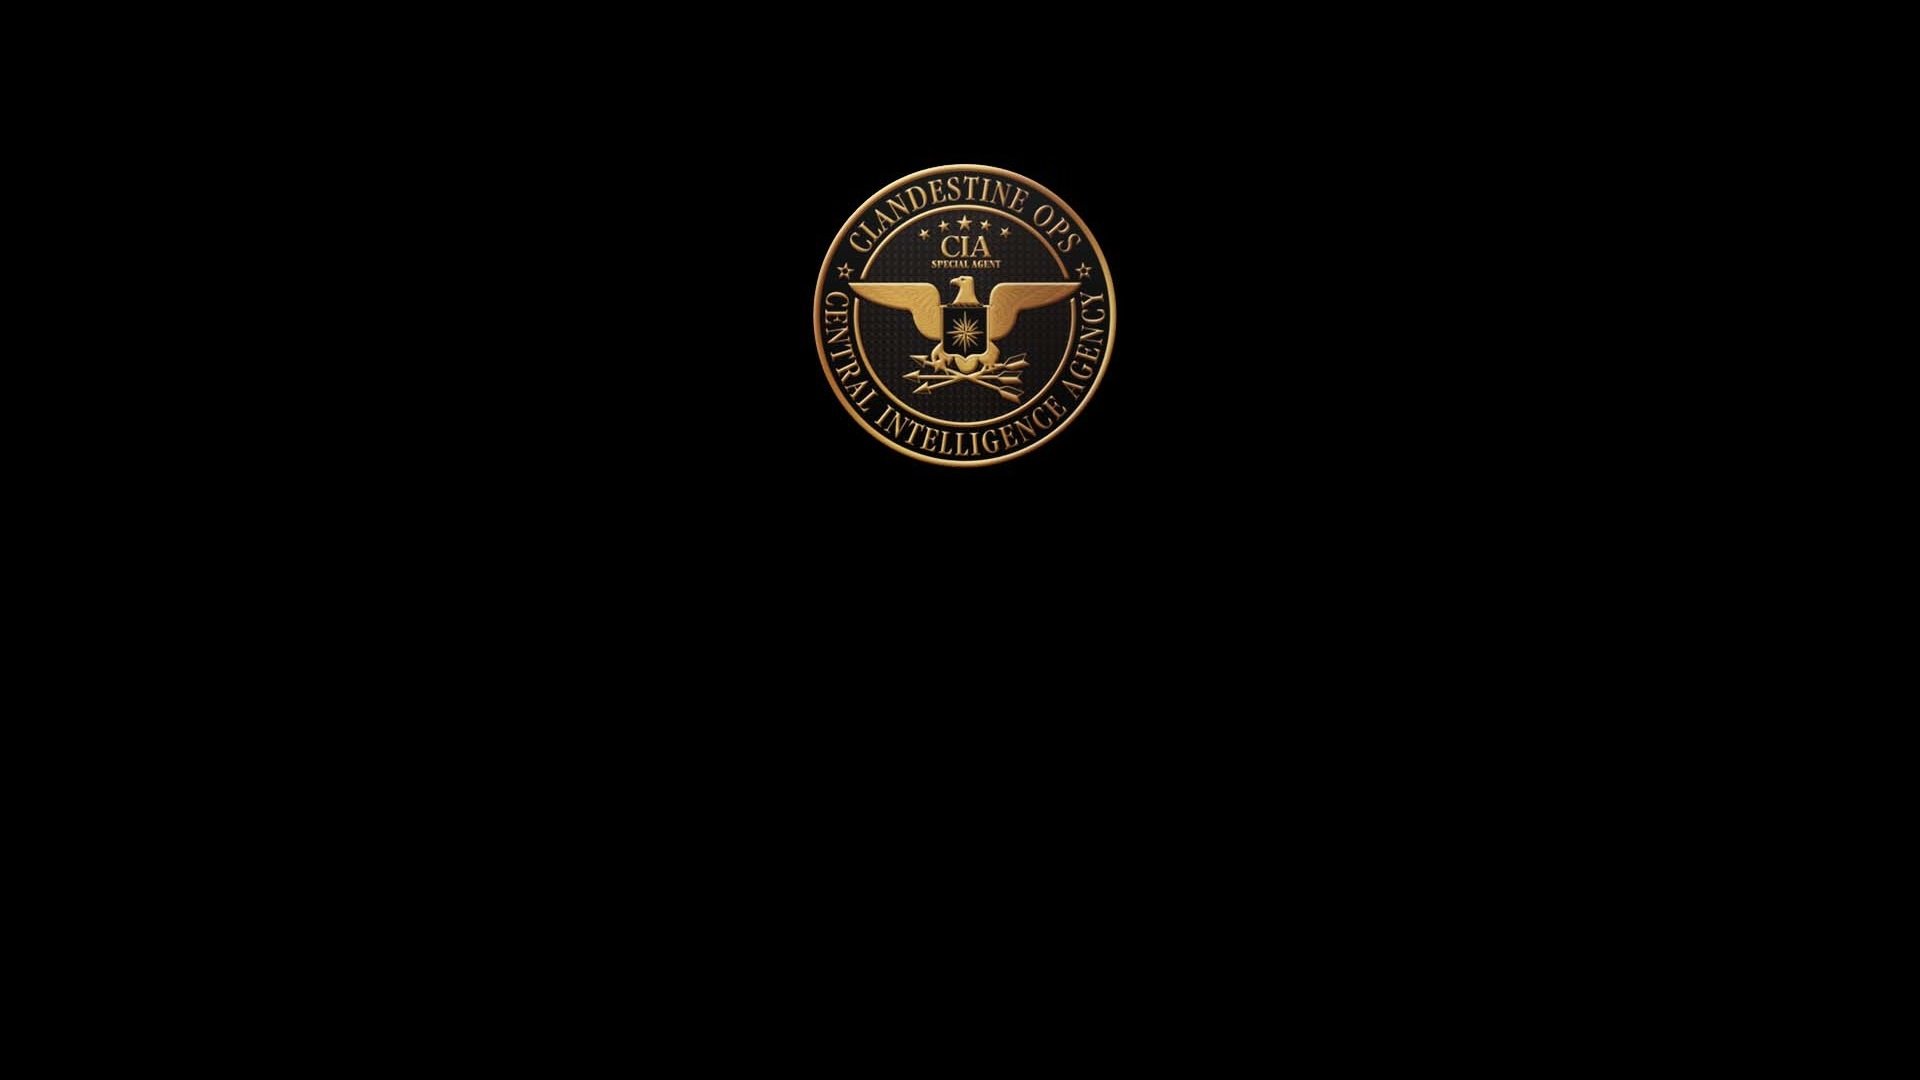 Cia Central Intelligence Agency Crime Usa America Spy Logo